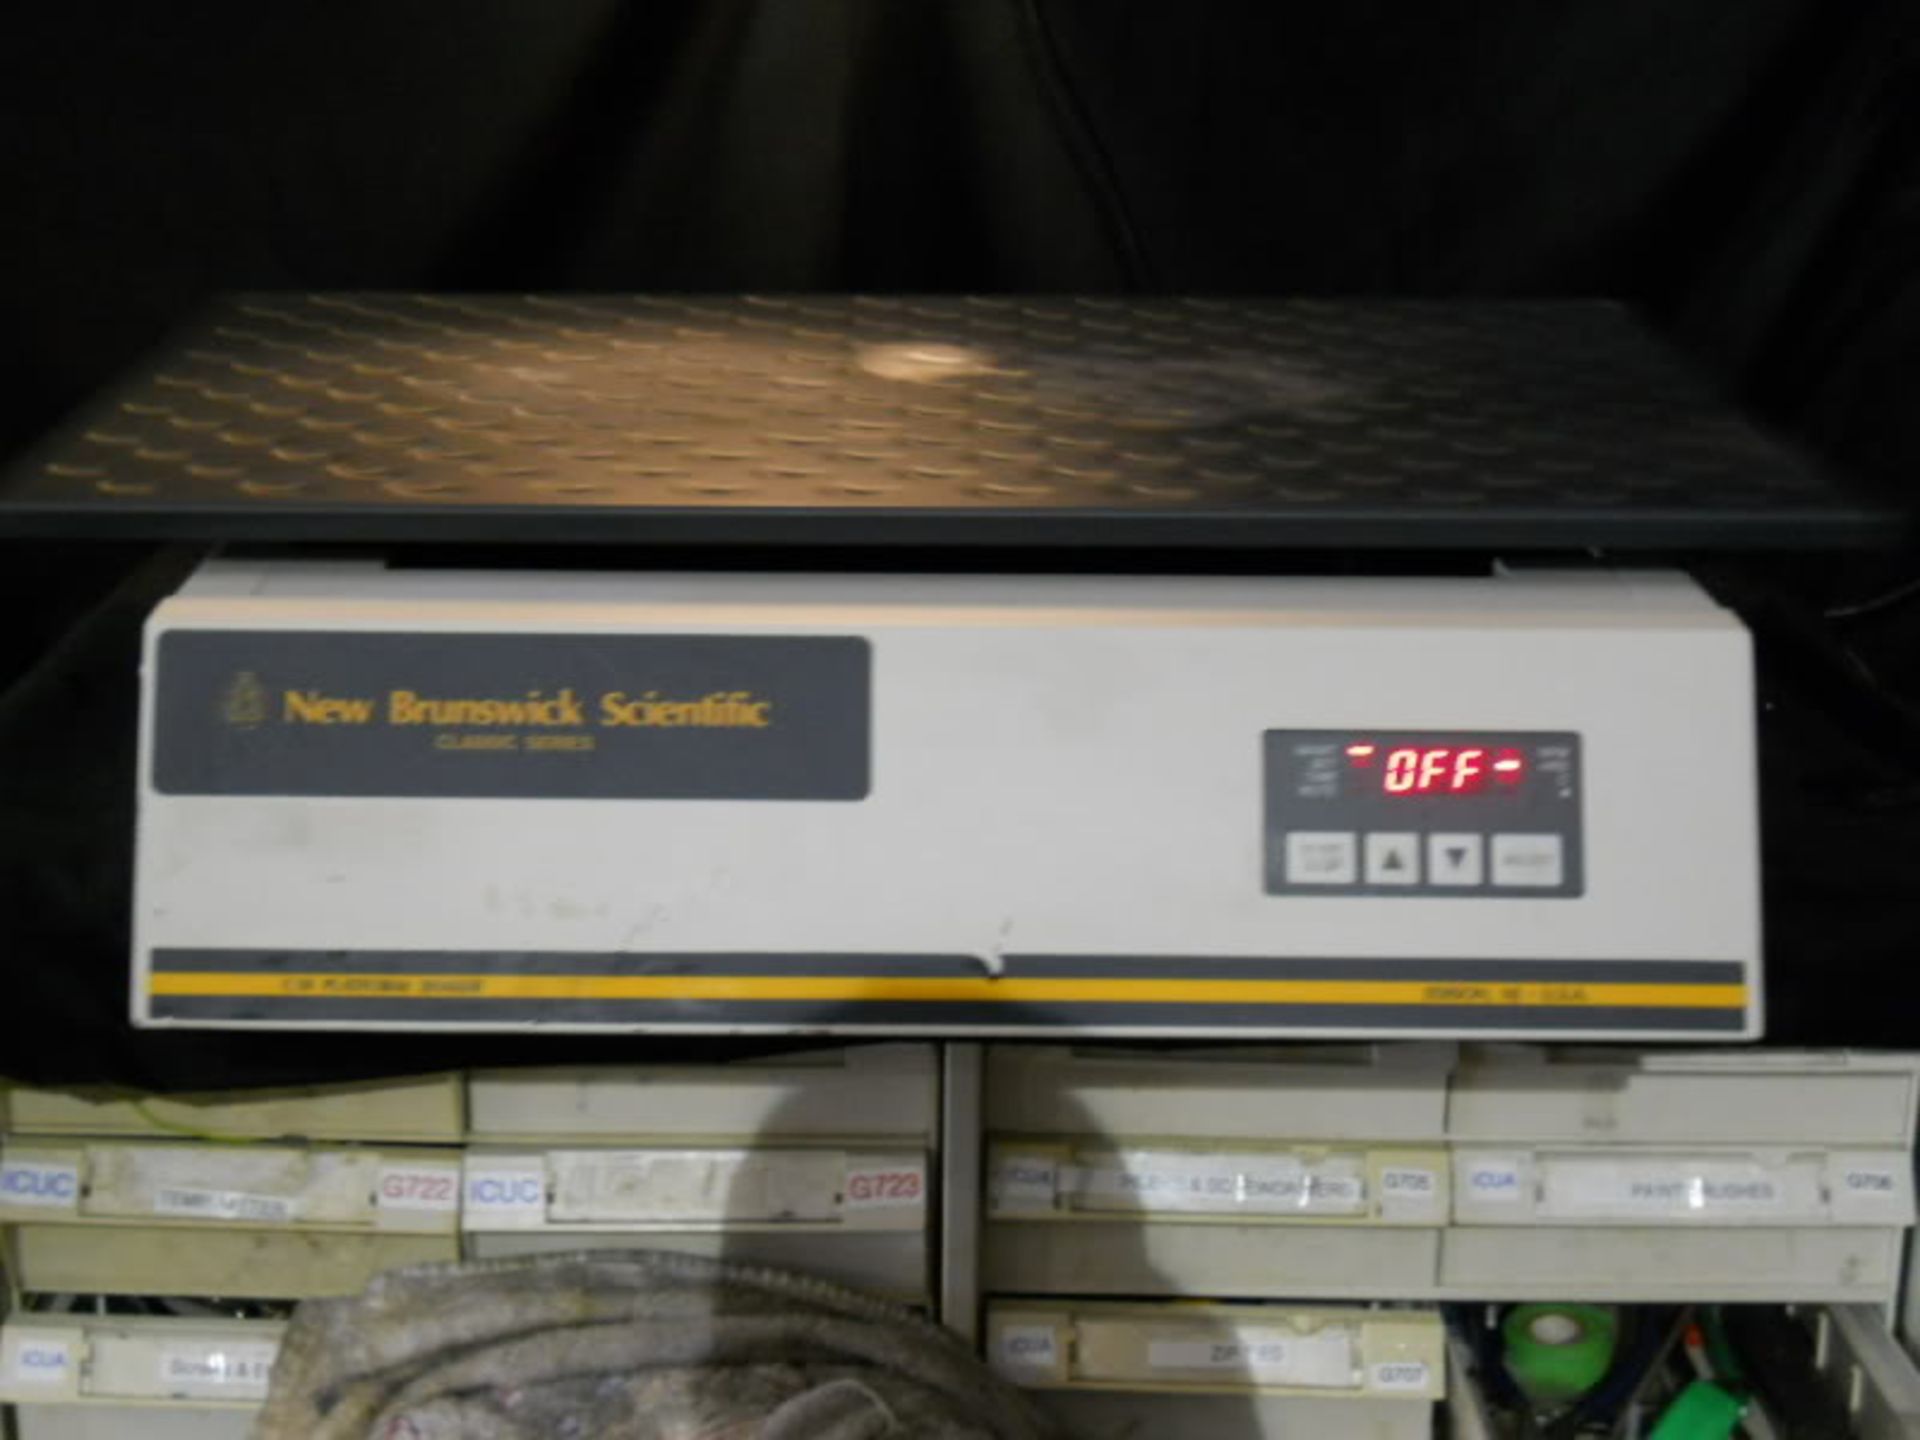 New Brunswick Scientific C10 Platform Shaker MFG# M1245-0000, Qty 1, 320837023676